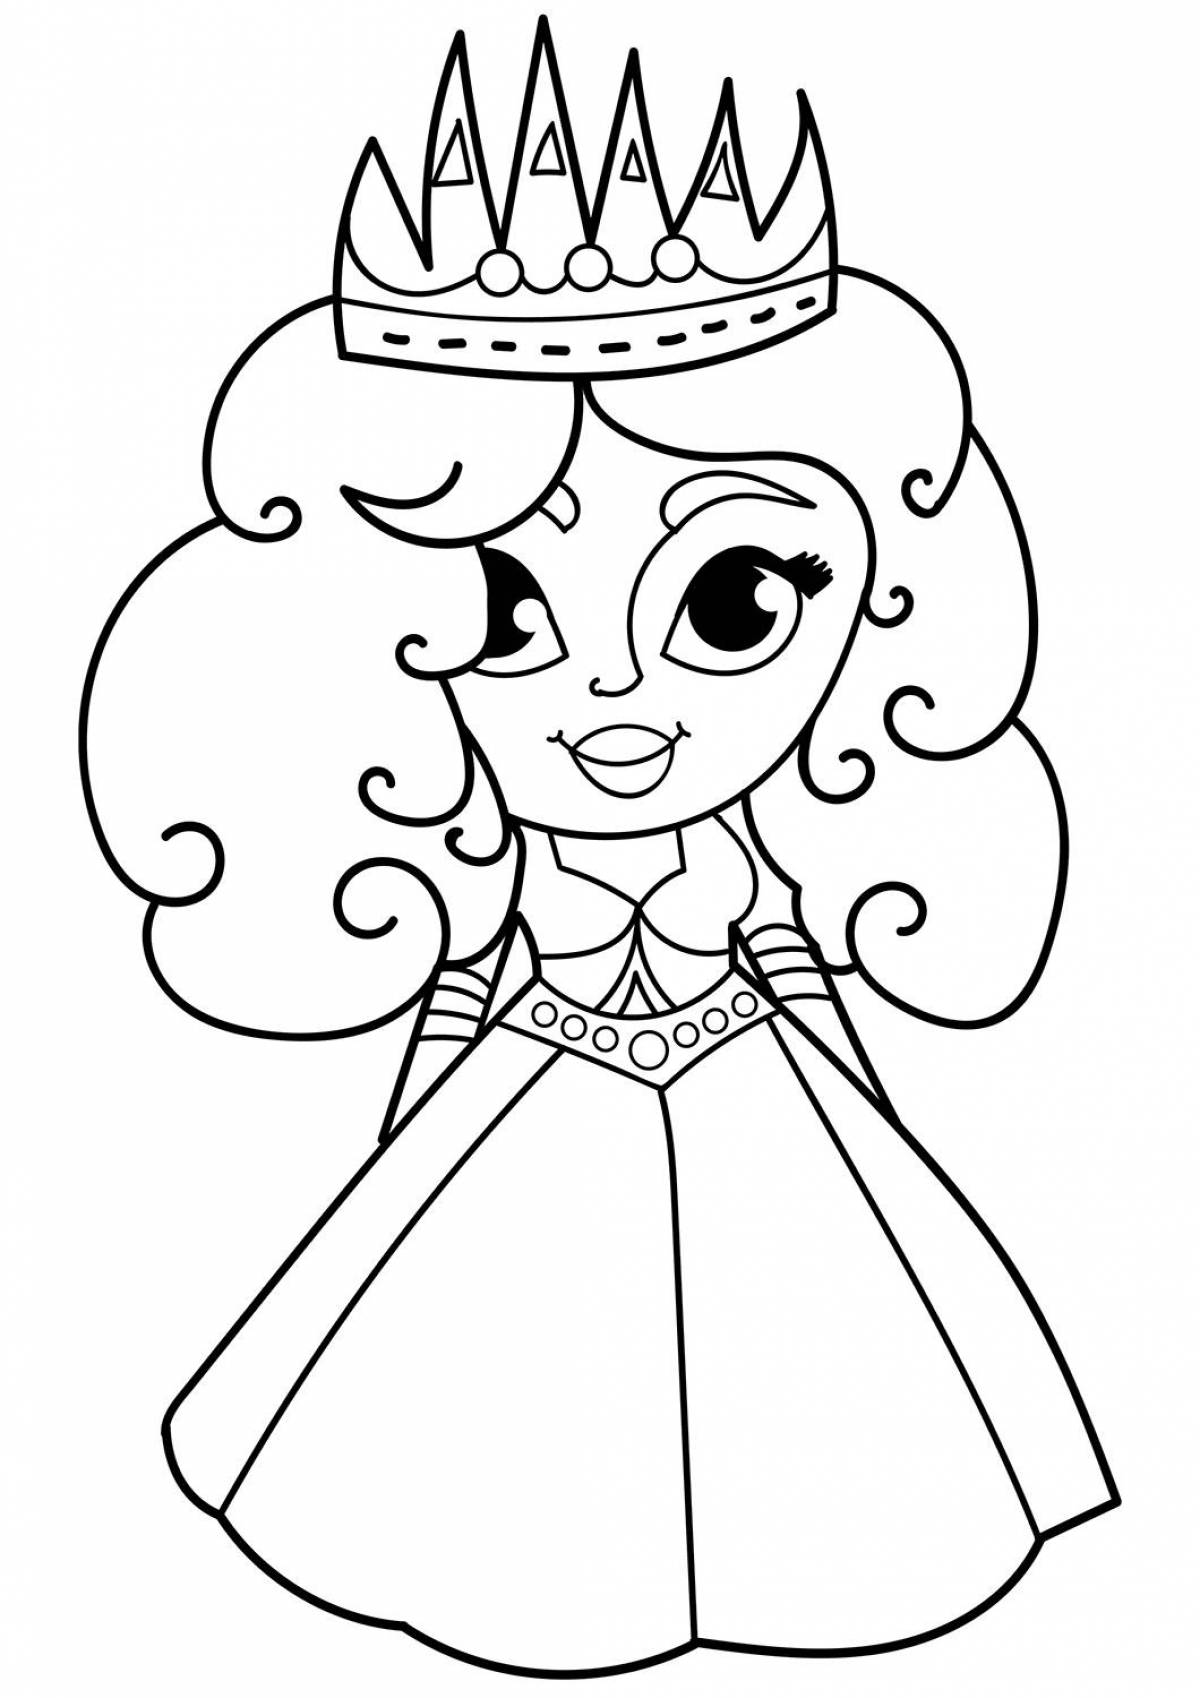 Сказочная раскраска принцесса для детей 3-4 лет